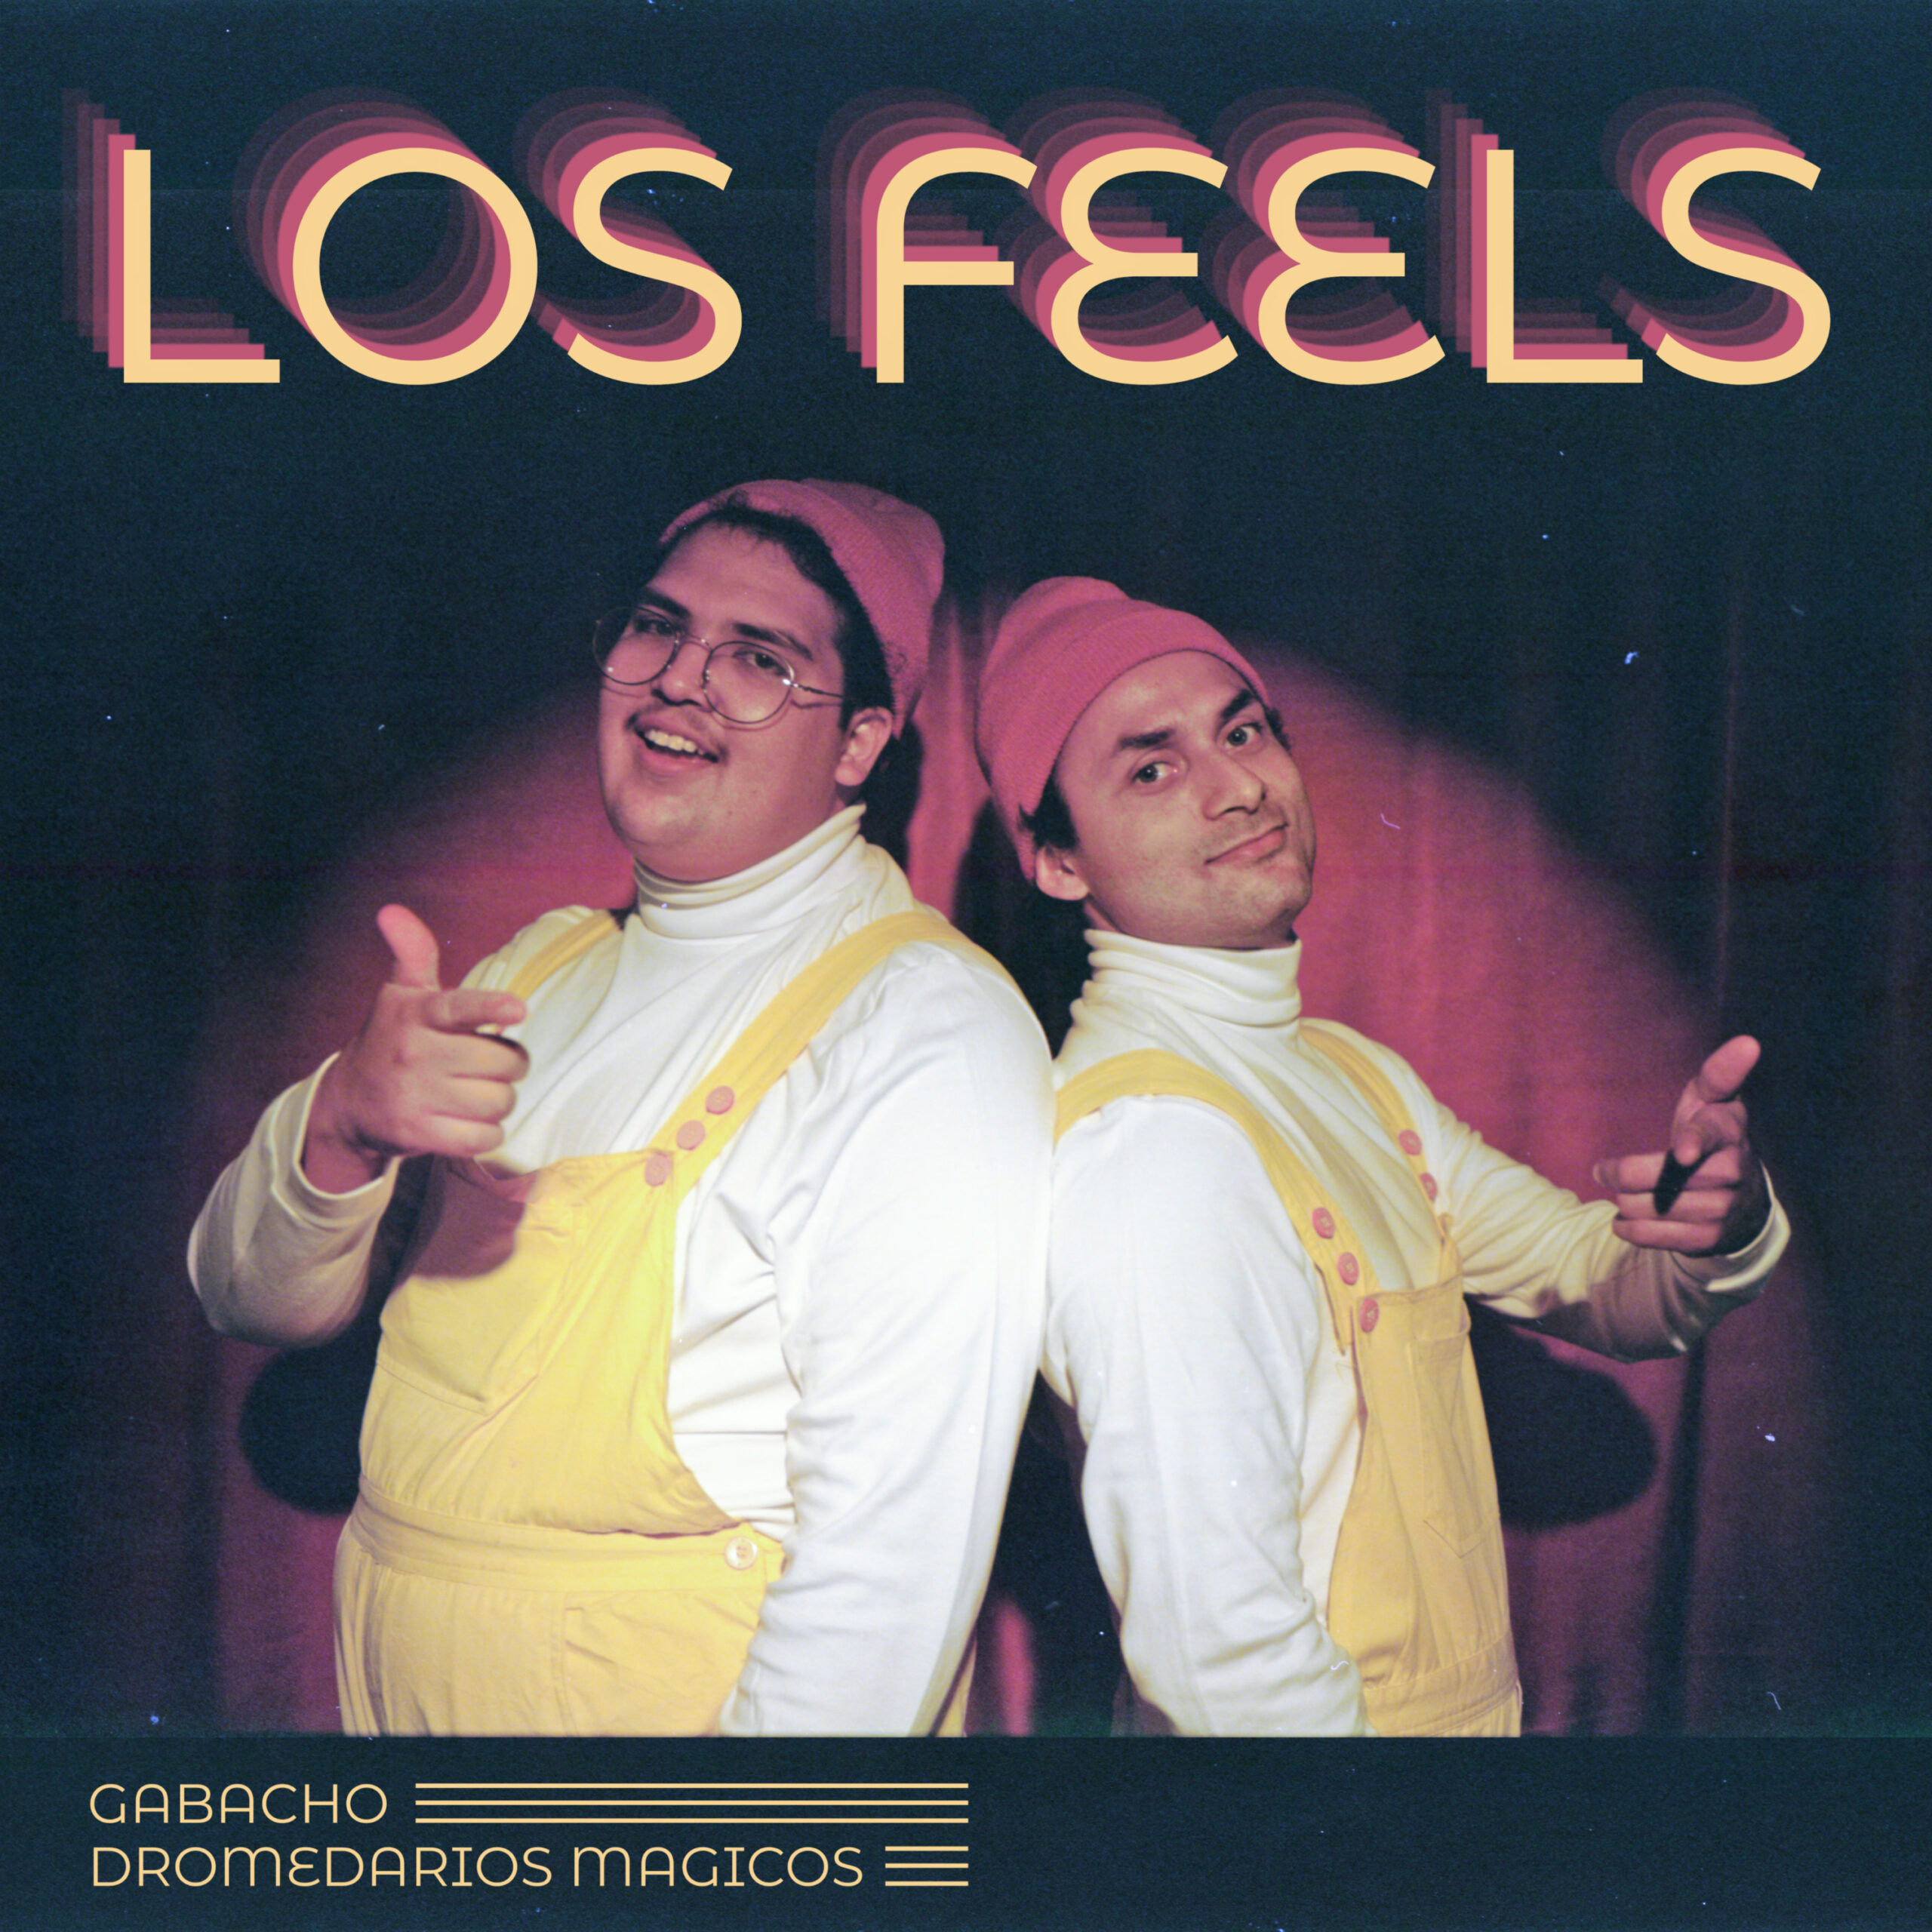  GABACHO y su rola “Los Feels” feat Dromedarios Mágicos